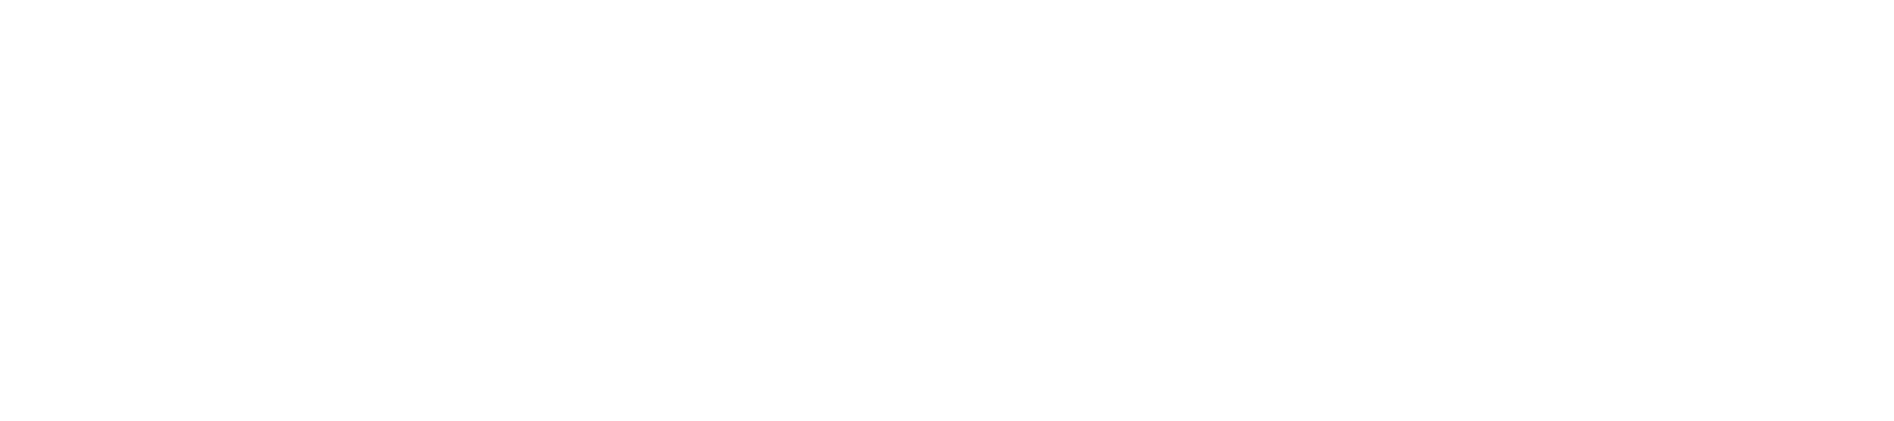 cash-app-logo@2x